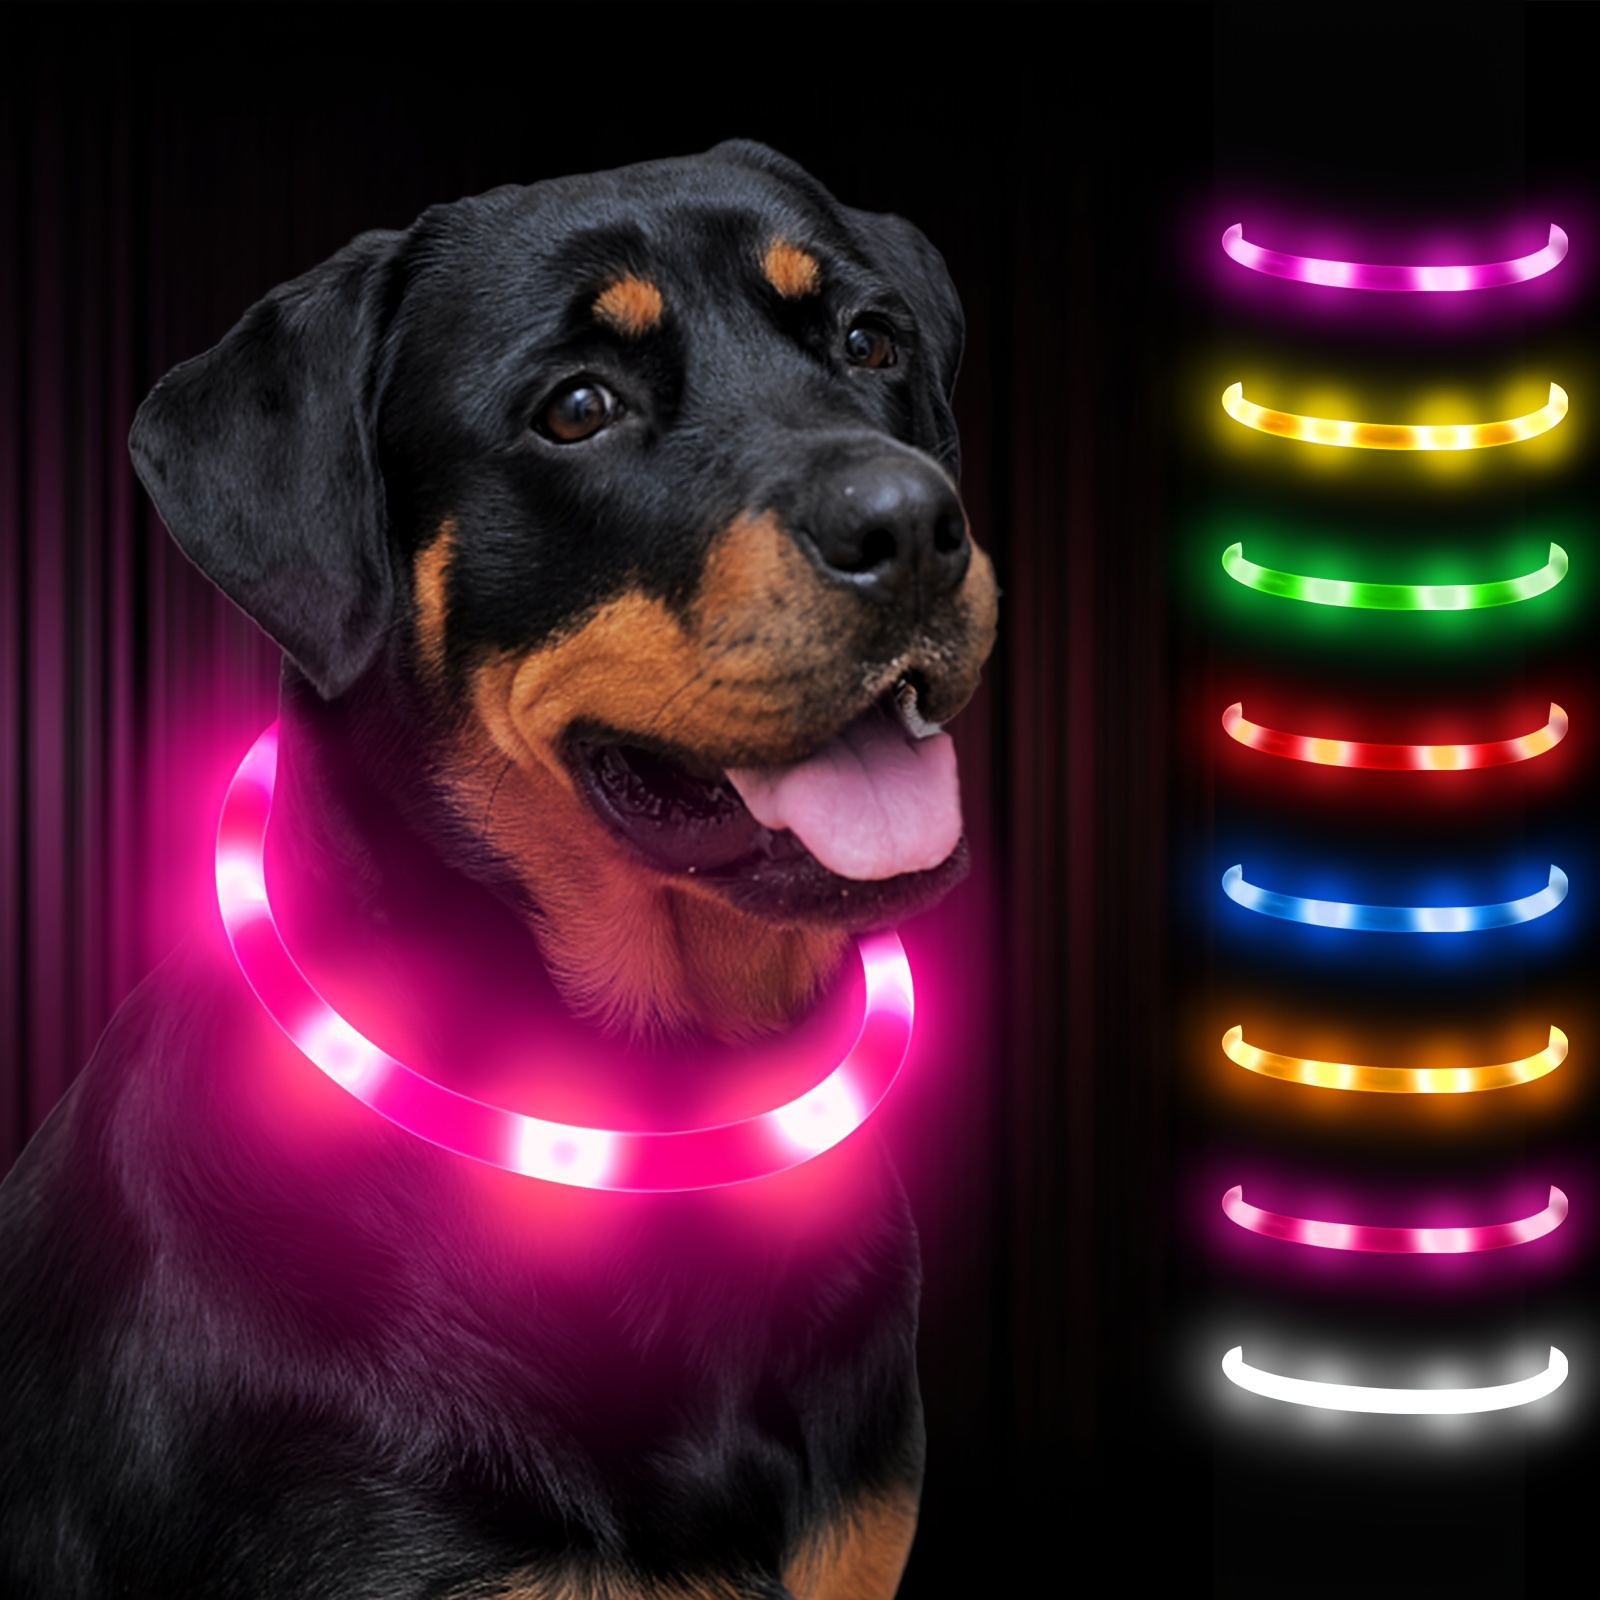  VEEVIIY Luces de perro para caminar por la noche, 4 modos de luz  para collar de perro con clip de luz LED que cambia de color, luz nocturna  impermeable para perro